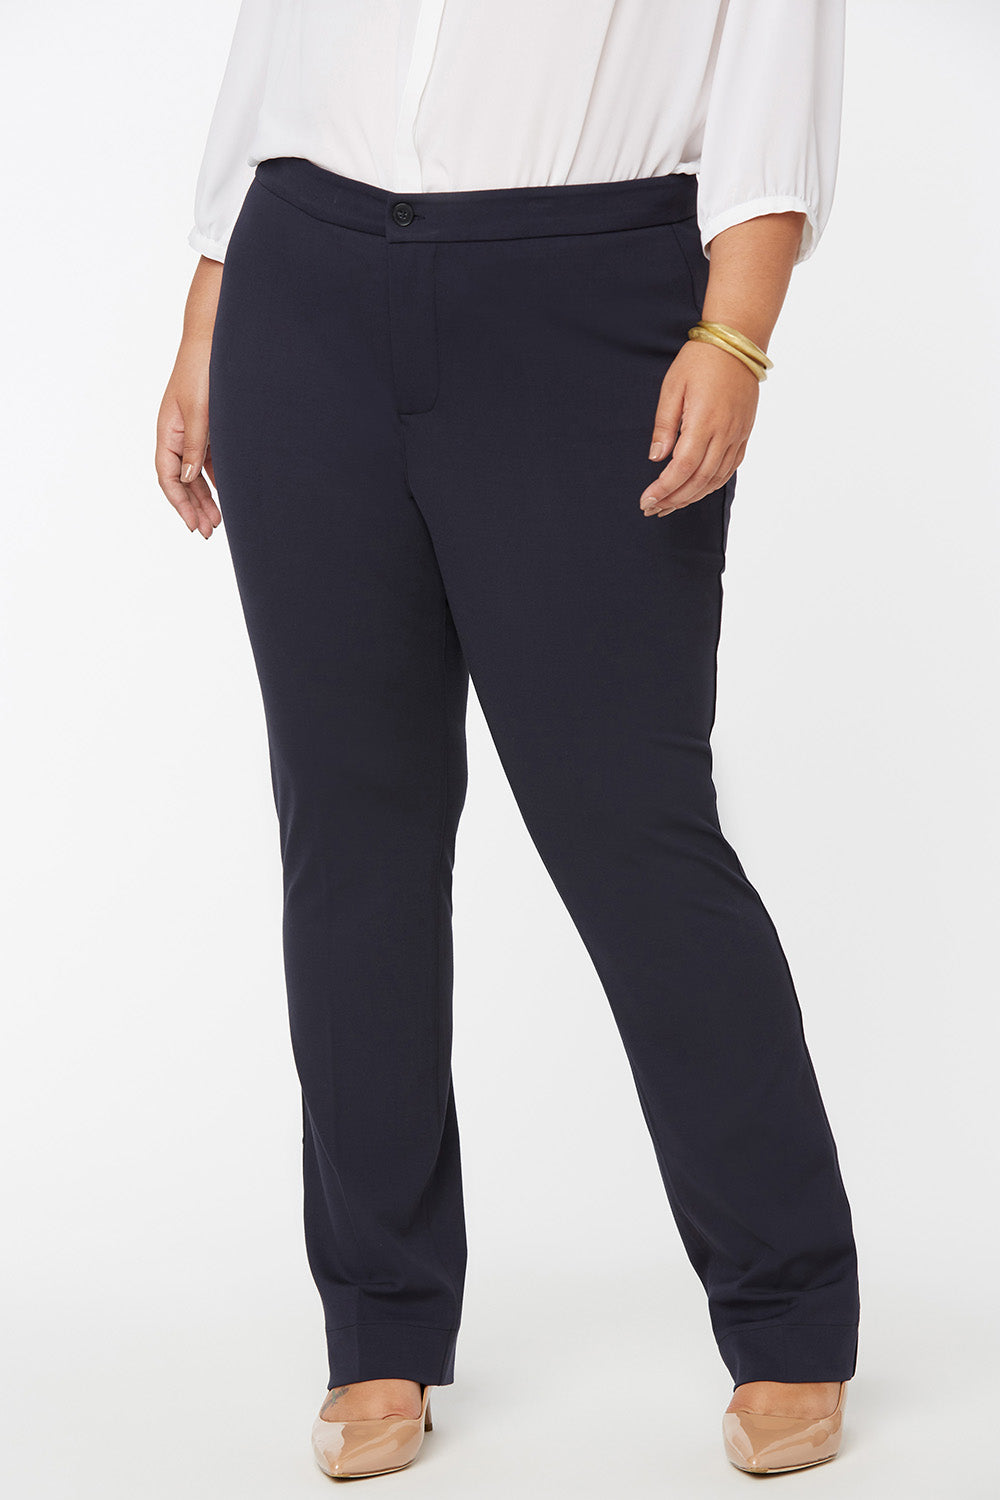 Terra & Sky Womens Plus Size Pull On Jegging Jean, Zambia